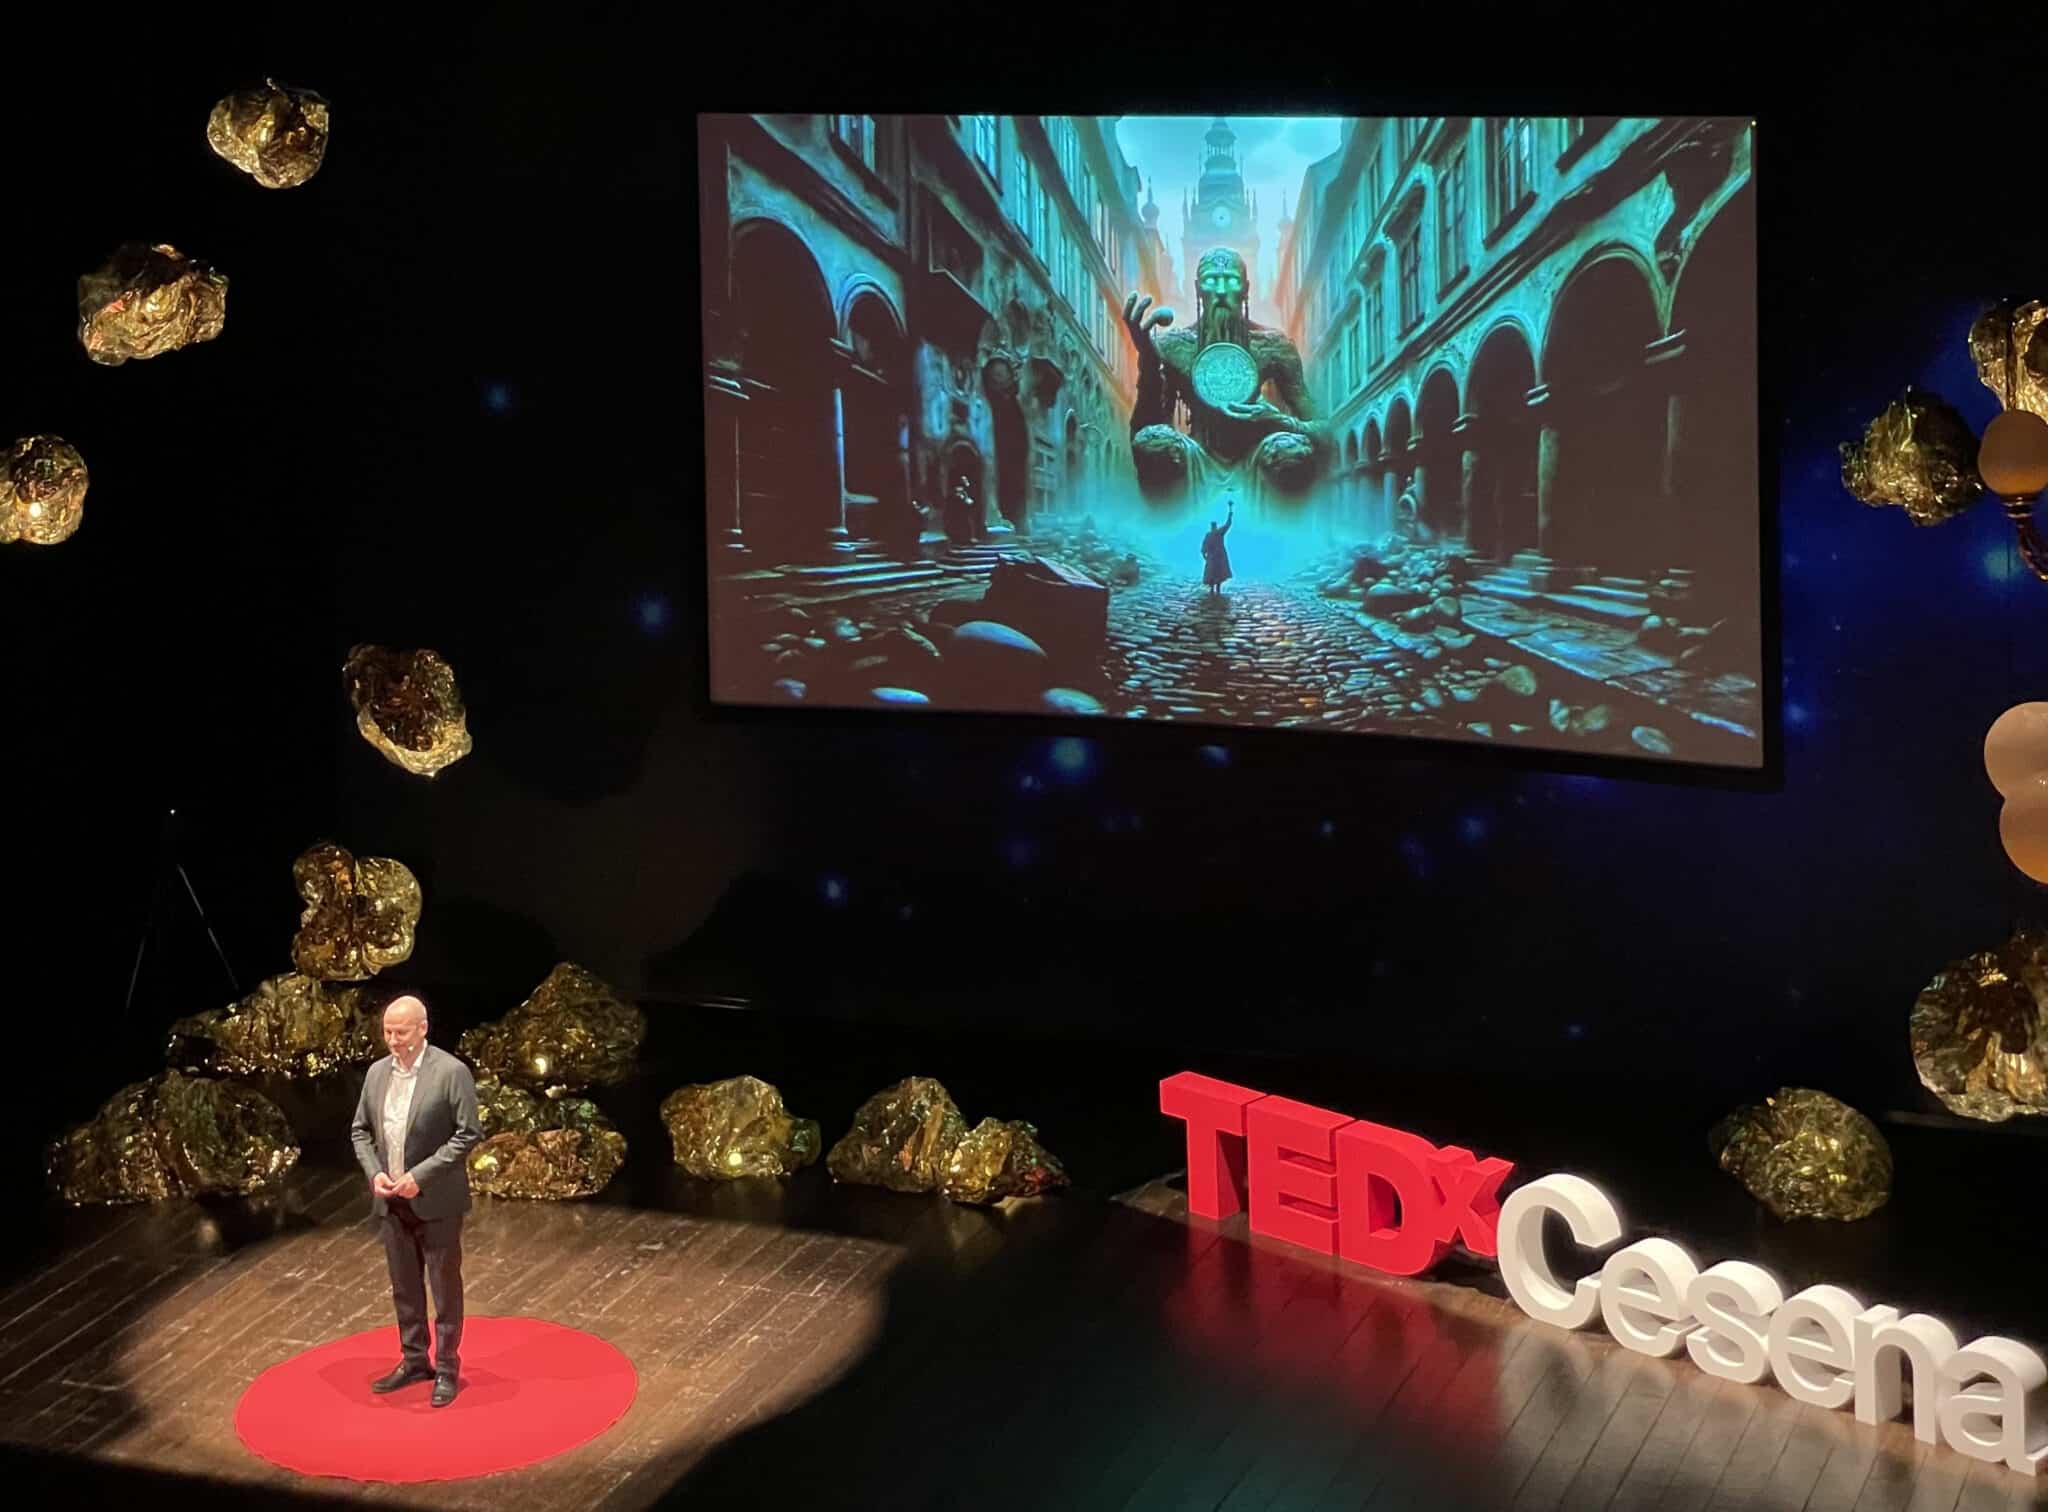 TEDxCesena 2023: una notte di magia e innovazione con BrainArt